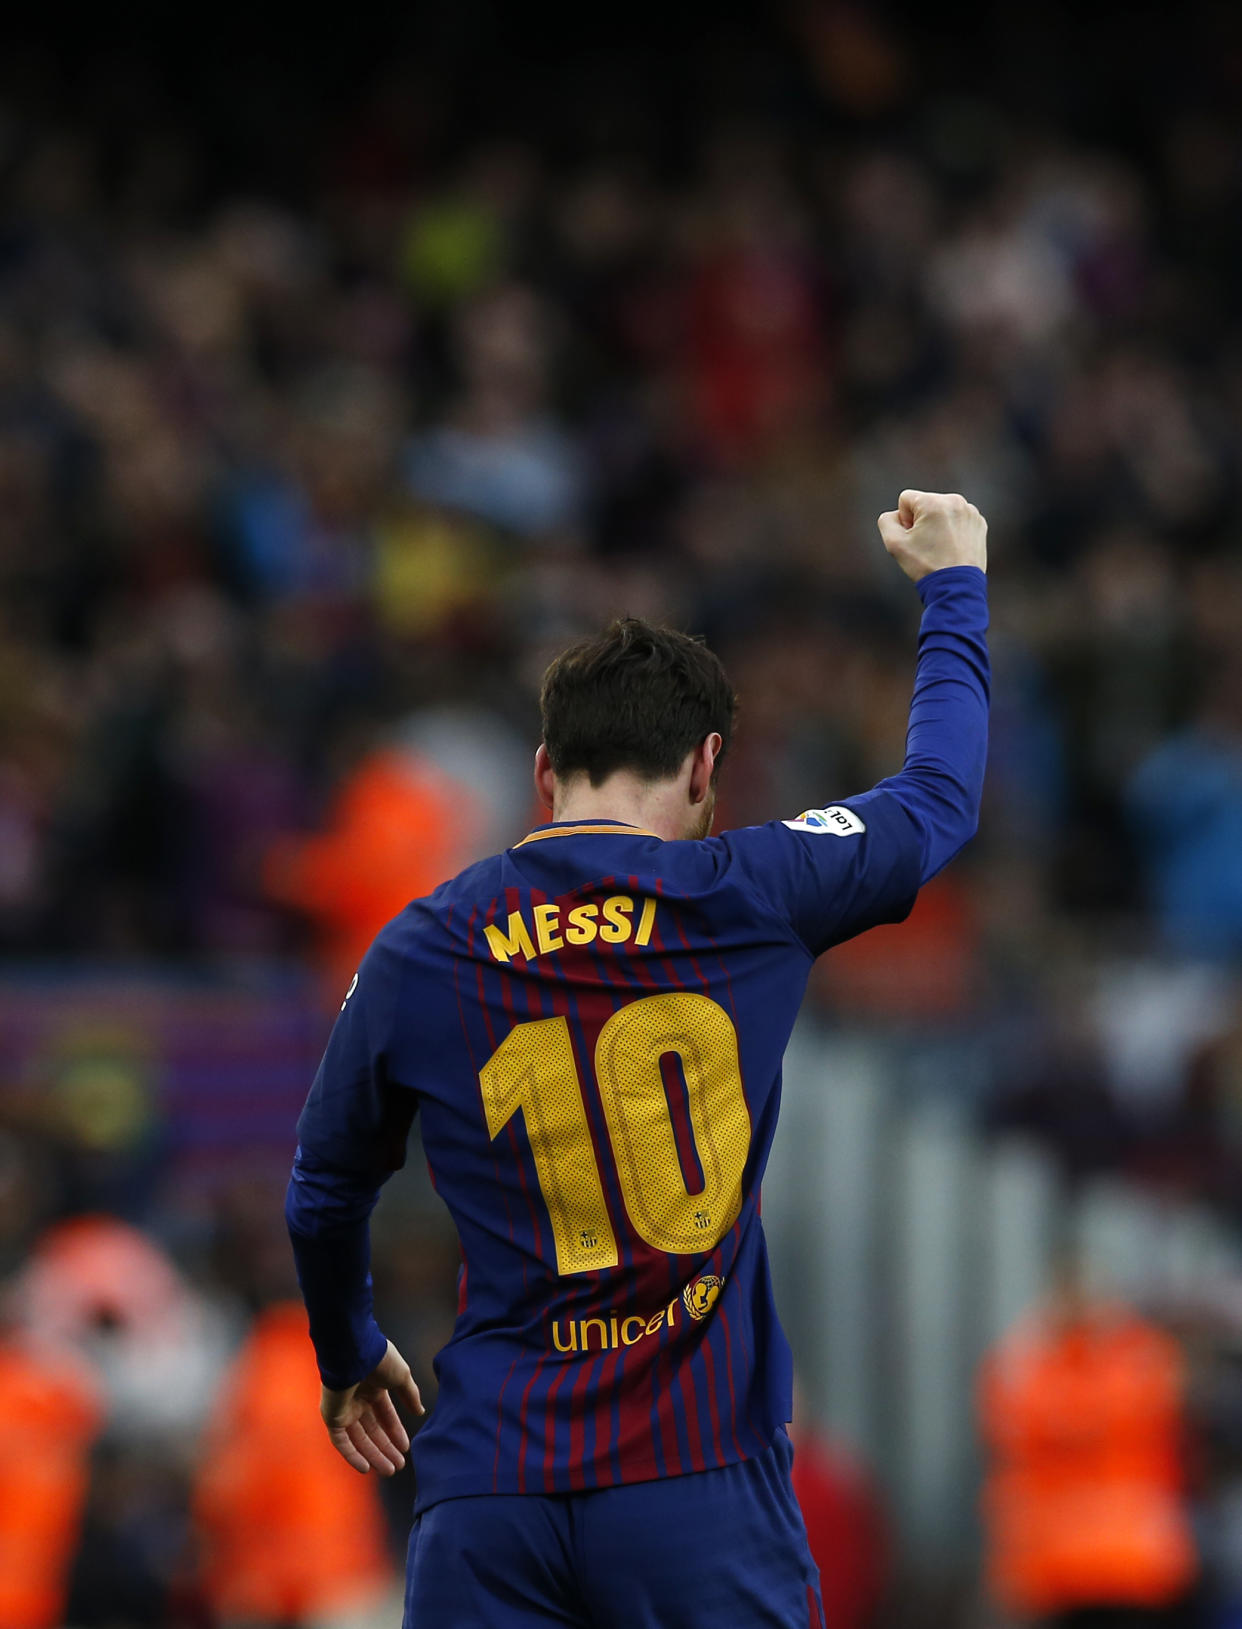 Lionel Messi levanta el puño para celebrar su gol frente al Atlético Madrid en el estadio Camp Nou de Barcelona, Spain. (Foto: AP Photo/Manu Fernandez)